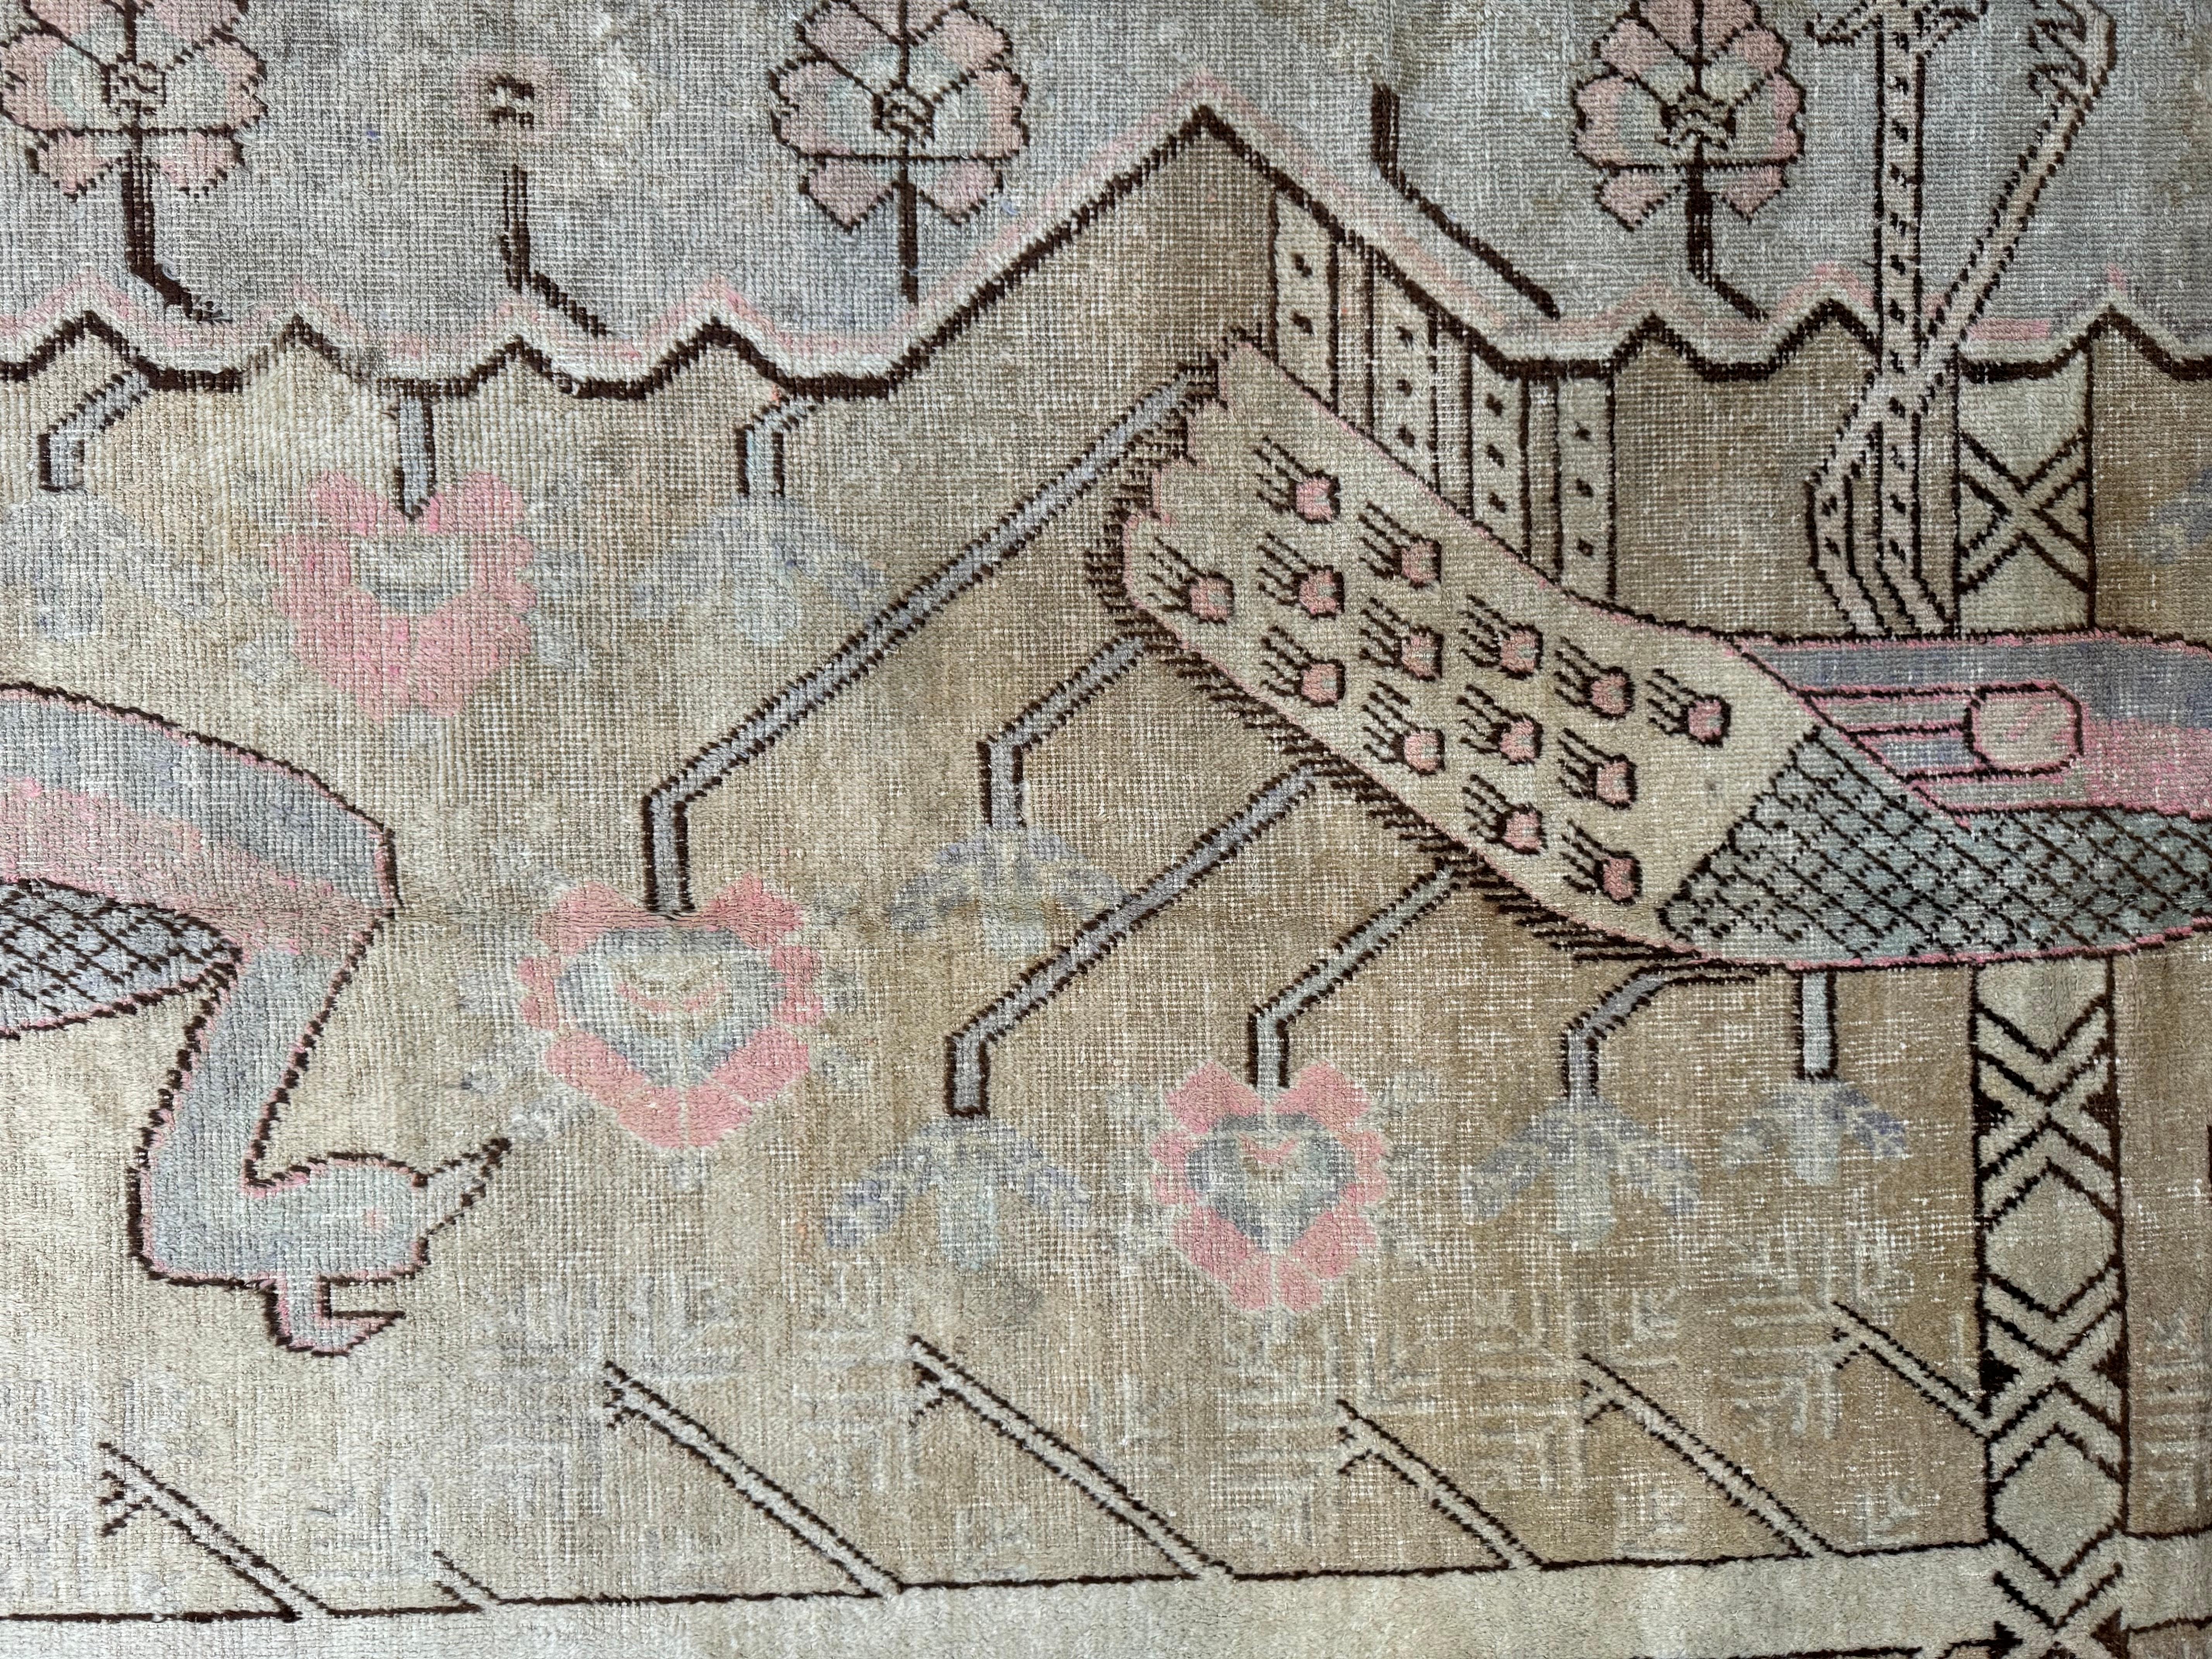 Enrichissez votre décor avec ce tapis Samarkand antique du 19e siècle, d'une taille de 8 pieds x 4,5 pieds. Ses motifs complexes et ses couleurs classiques apportent une élégance intemporelle à toute maison américaine, mêlant harmonieusement charme